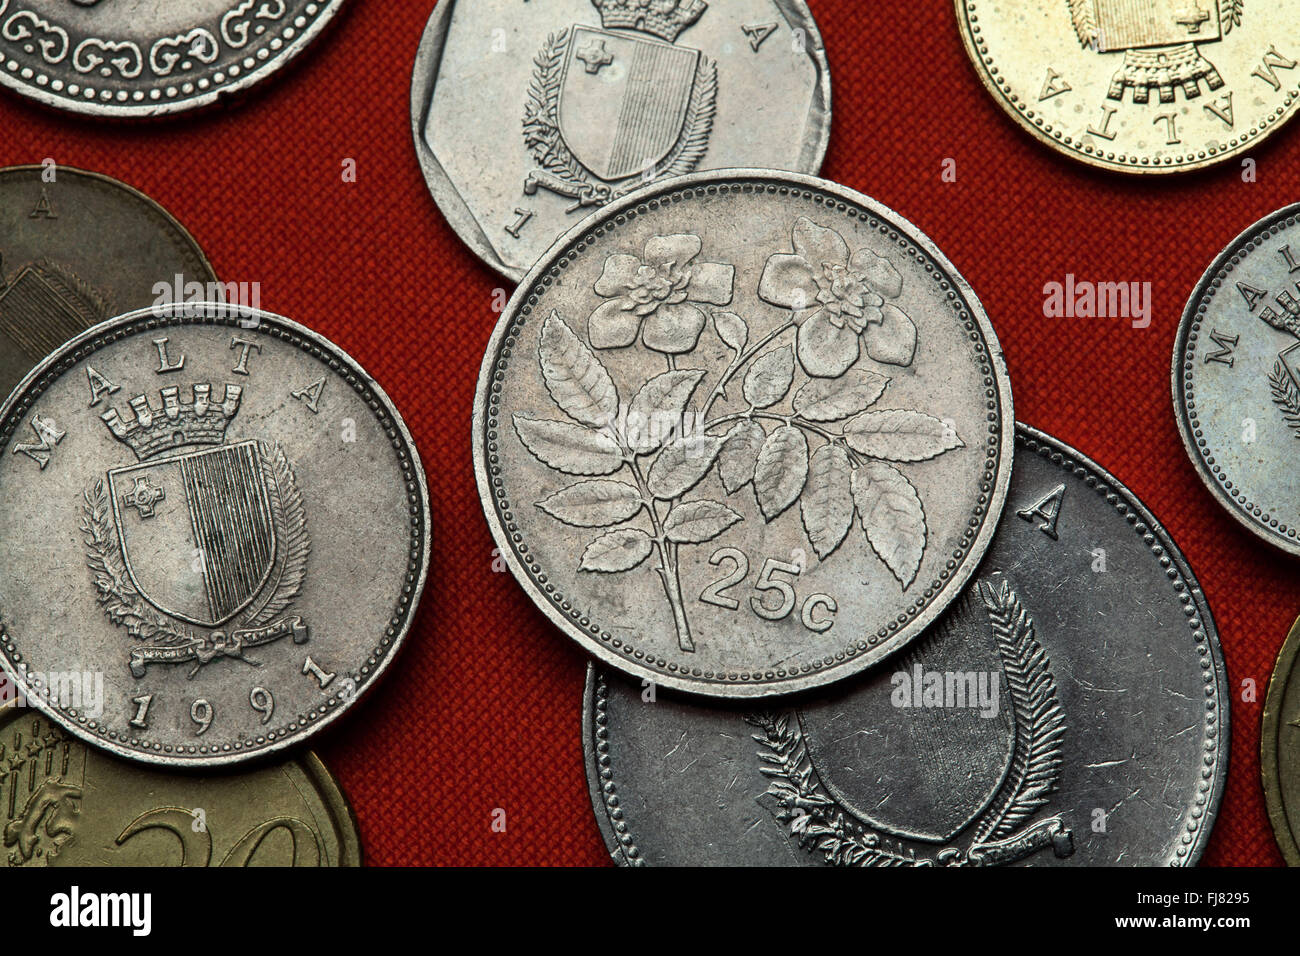 Monete di Malta. Evergreen rosa (Rosa sempervirens) rappresentata nel Maltese 25 centesimi moneta. Foto Stock